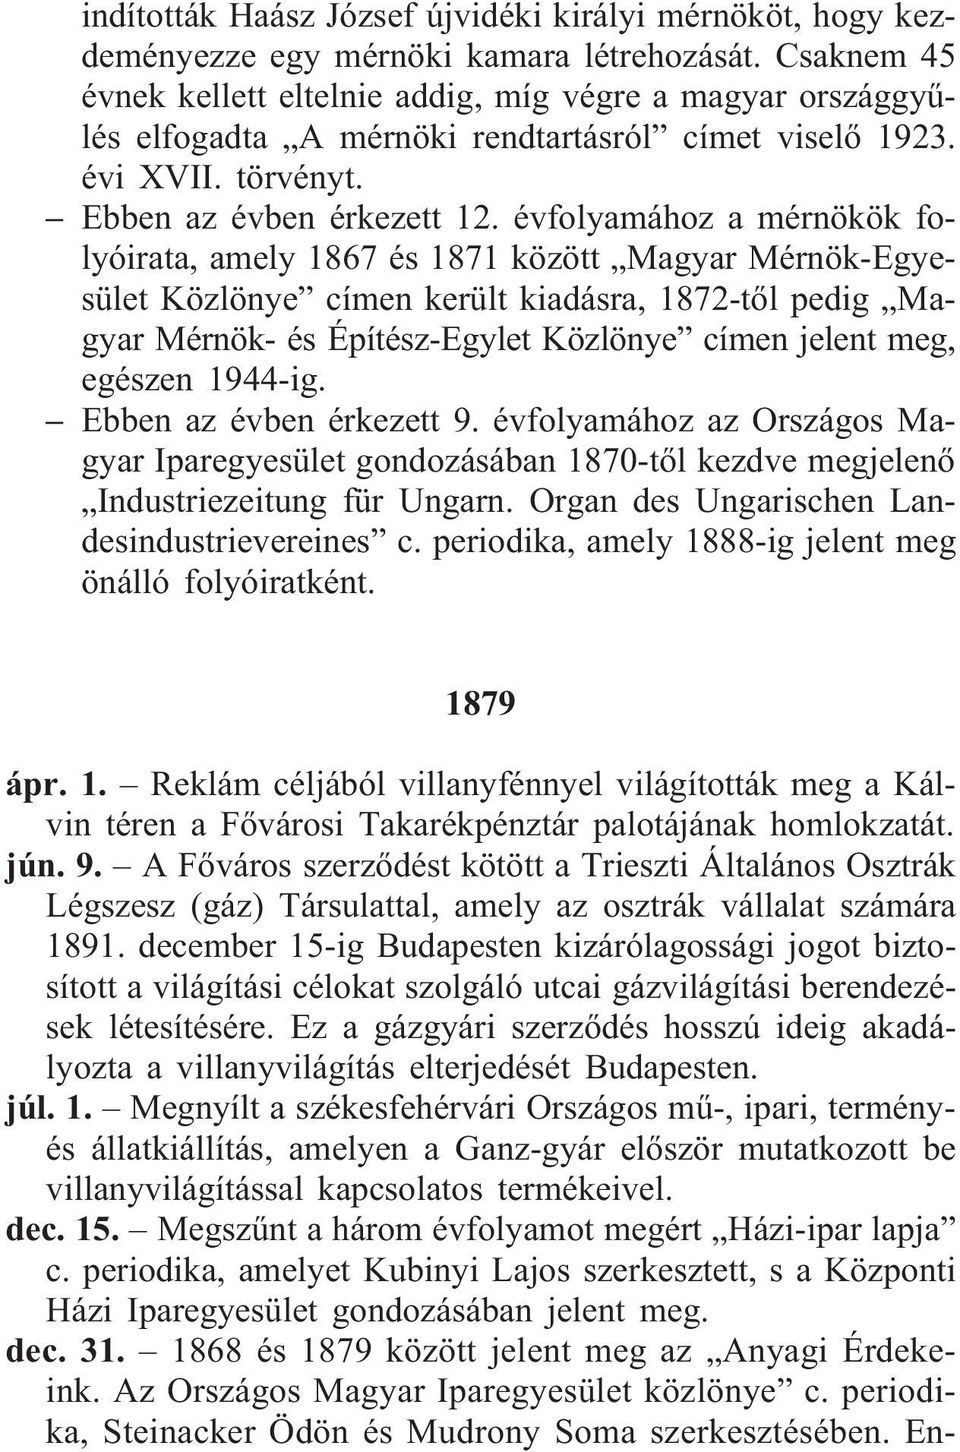 évfolyamához a mérnökök folyóirata, amely 1867 és 1871 között Magyar Mérnök-Egyesület Közlönye címen került kiadásra, 1872-tõl pedig Magyar Mérnök- és Építész-Egylet Közlönye címen jelent meg,